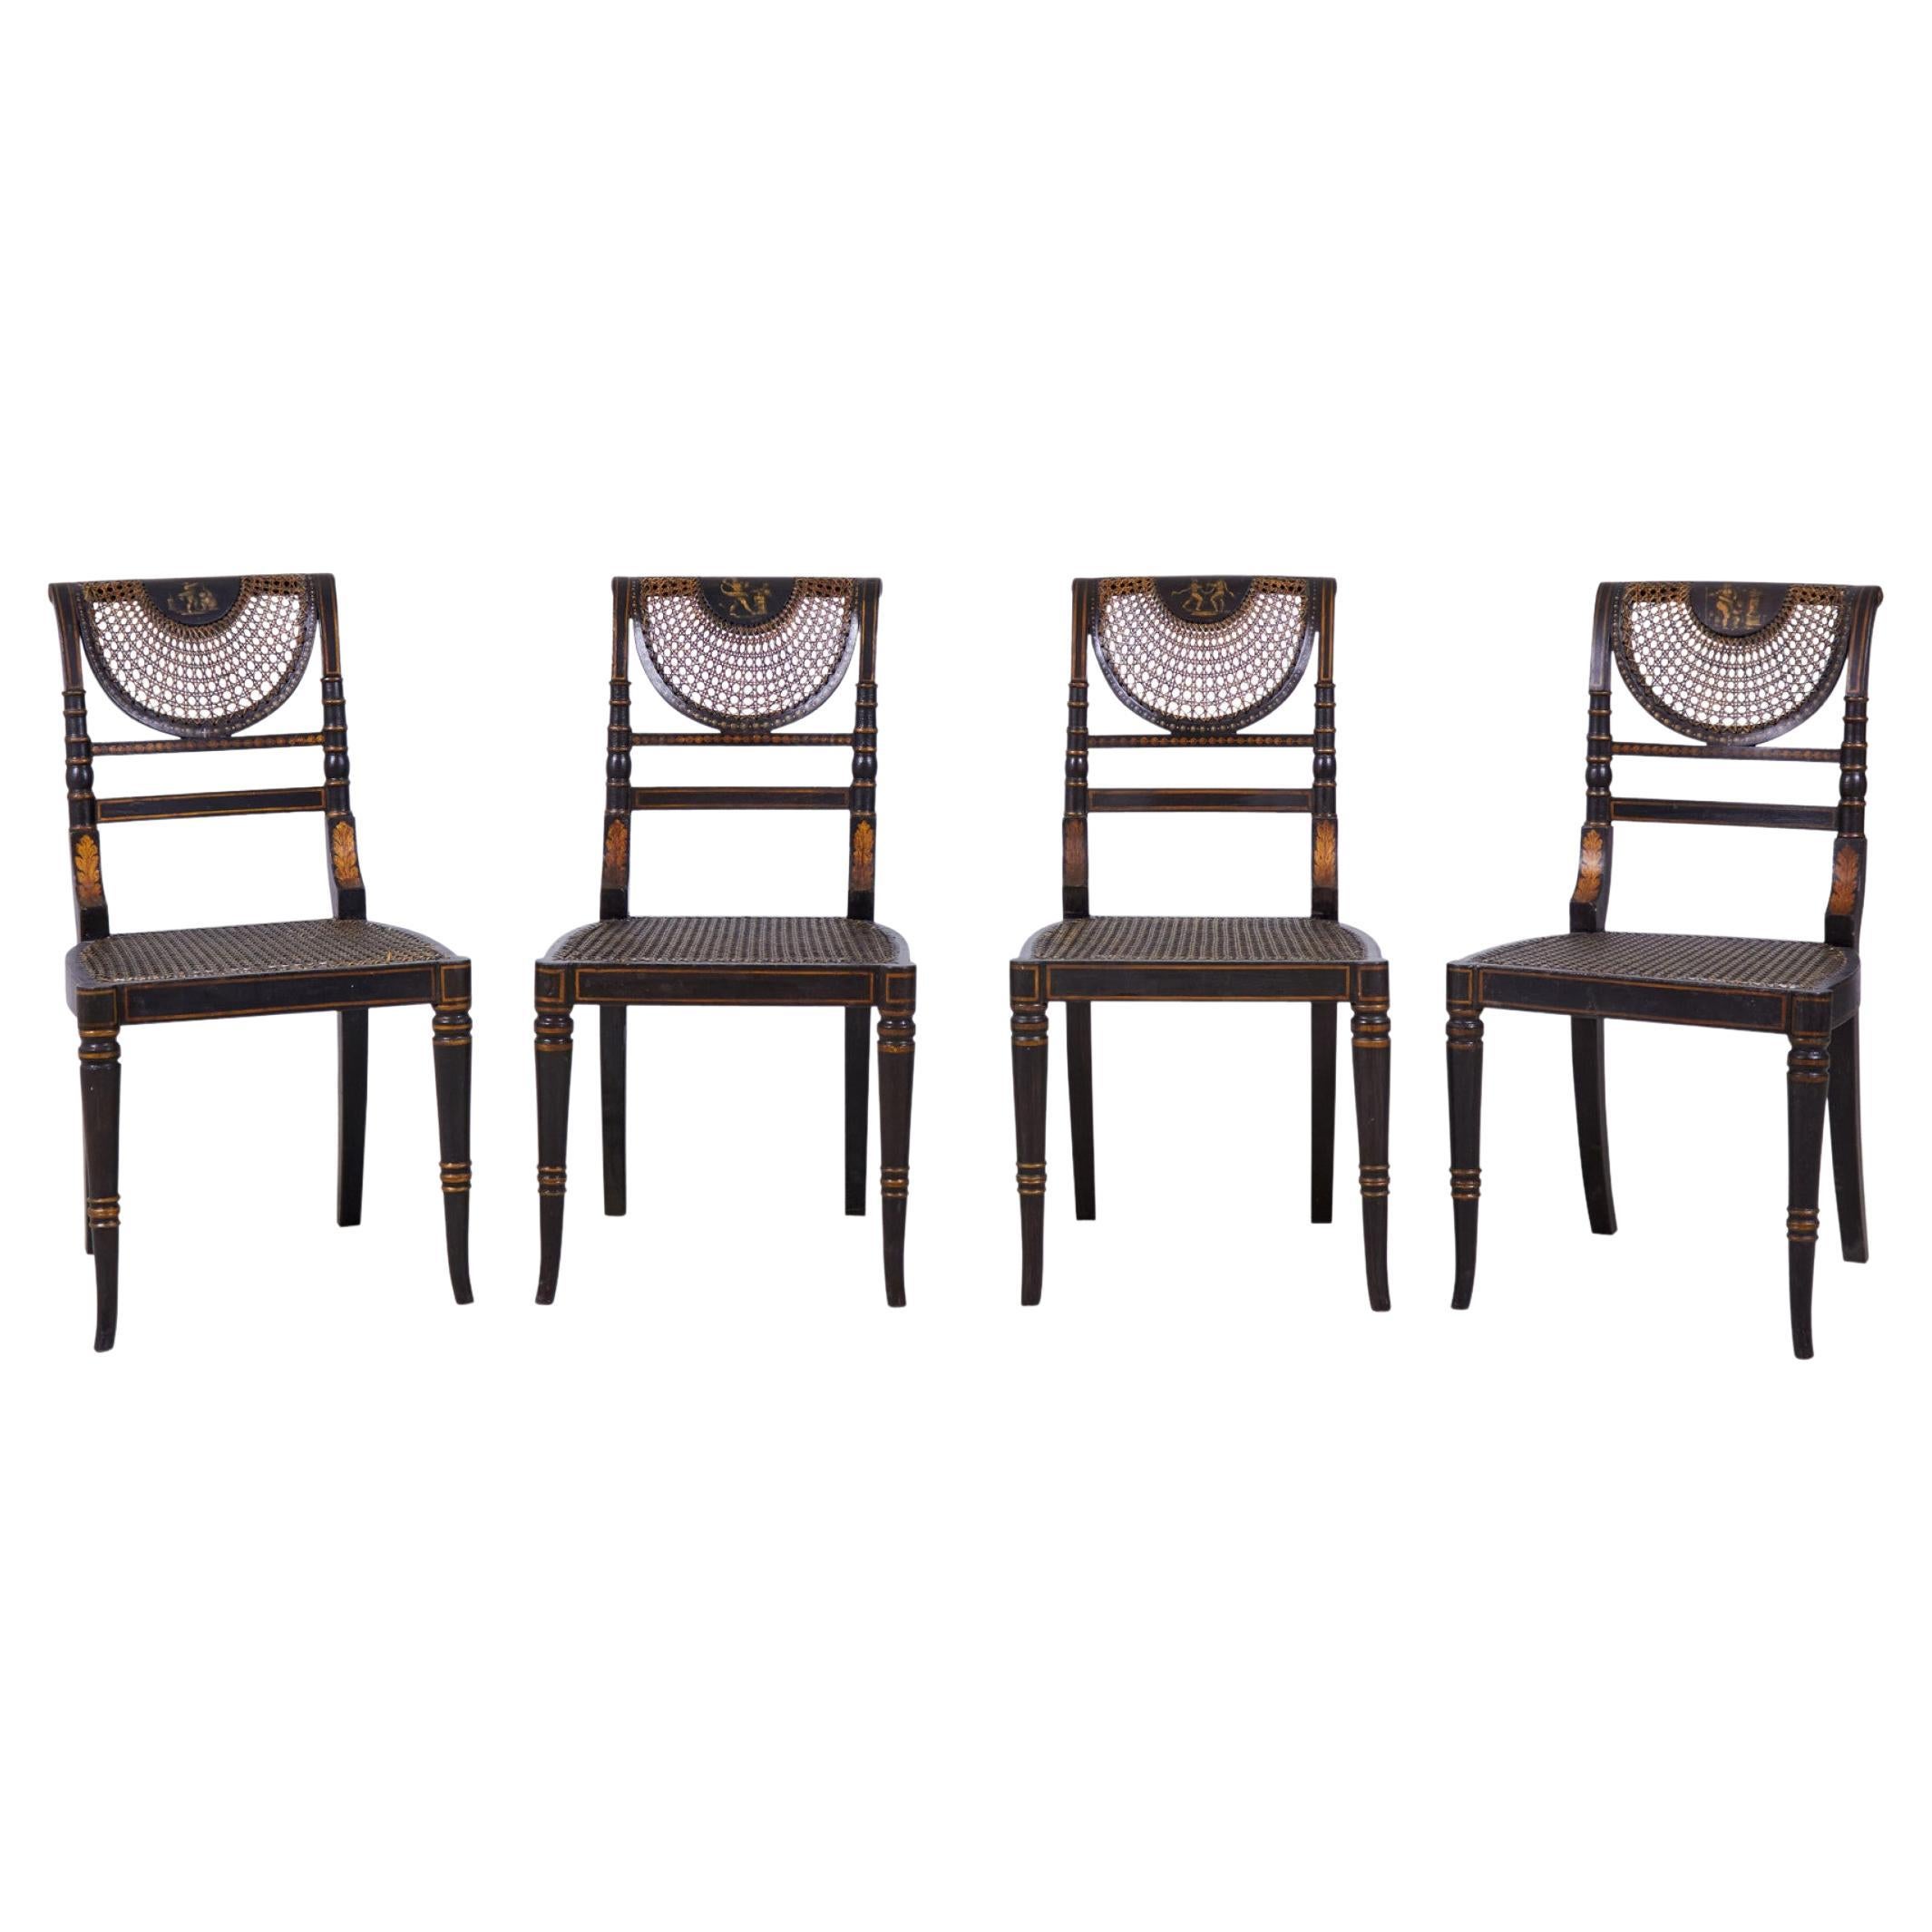 Ensemble de 4 chaises d'appoint Regency anglaises à assise en rotin peint en noir et or